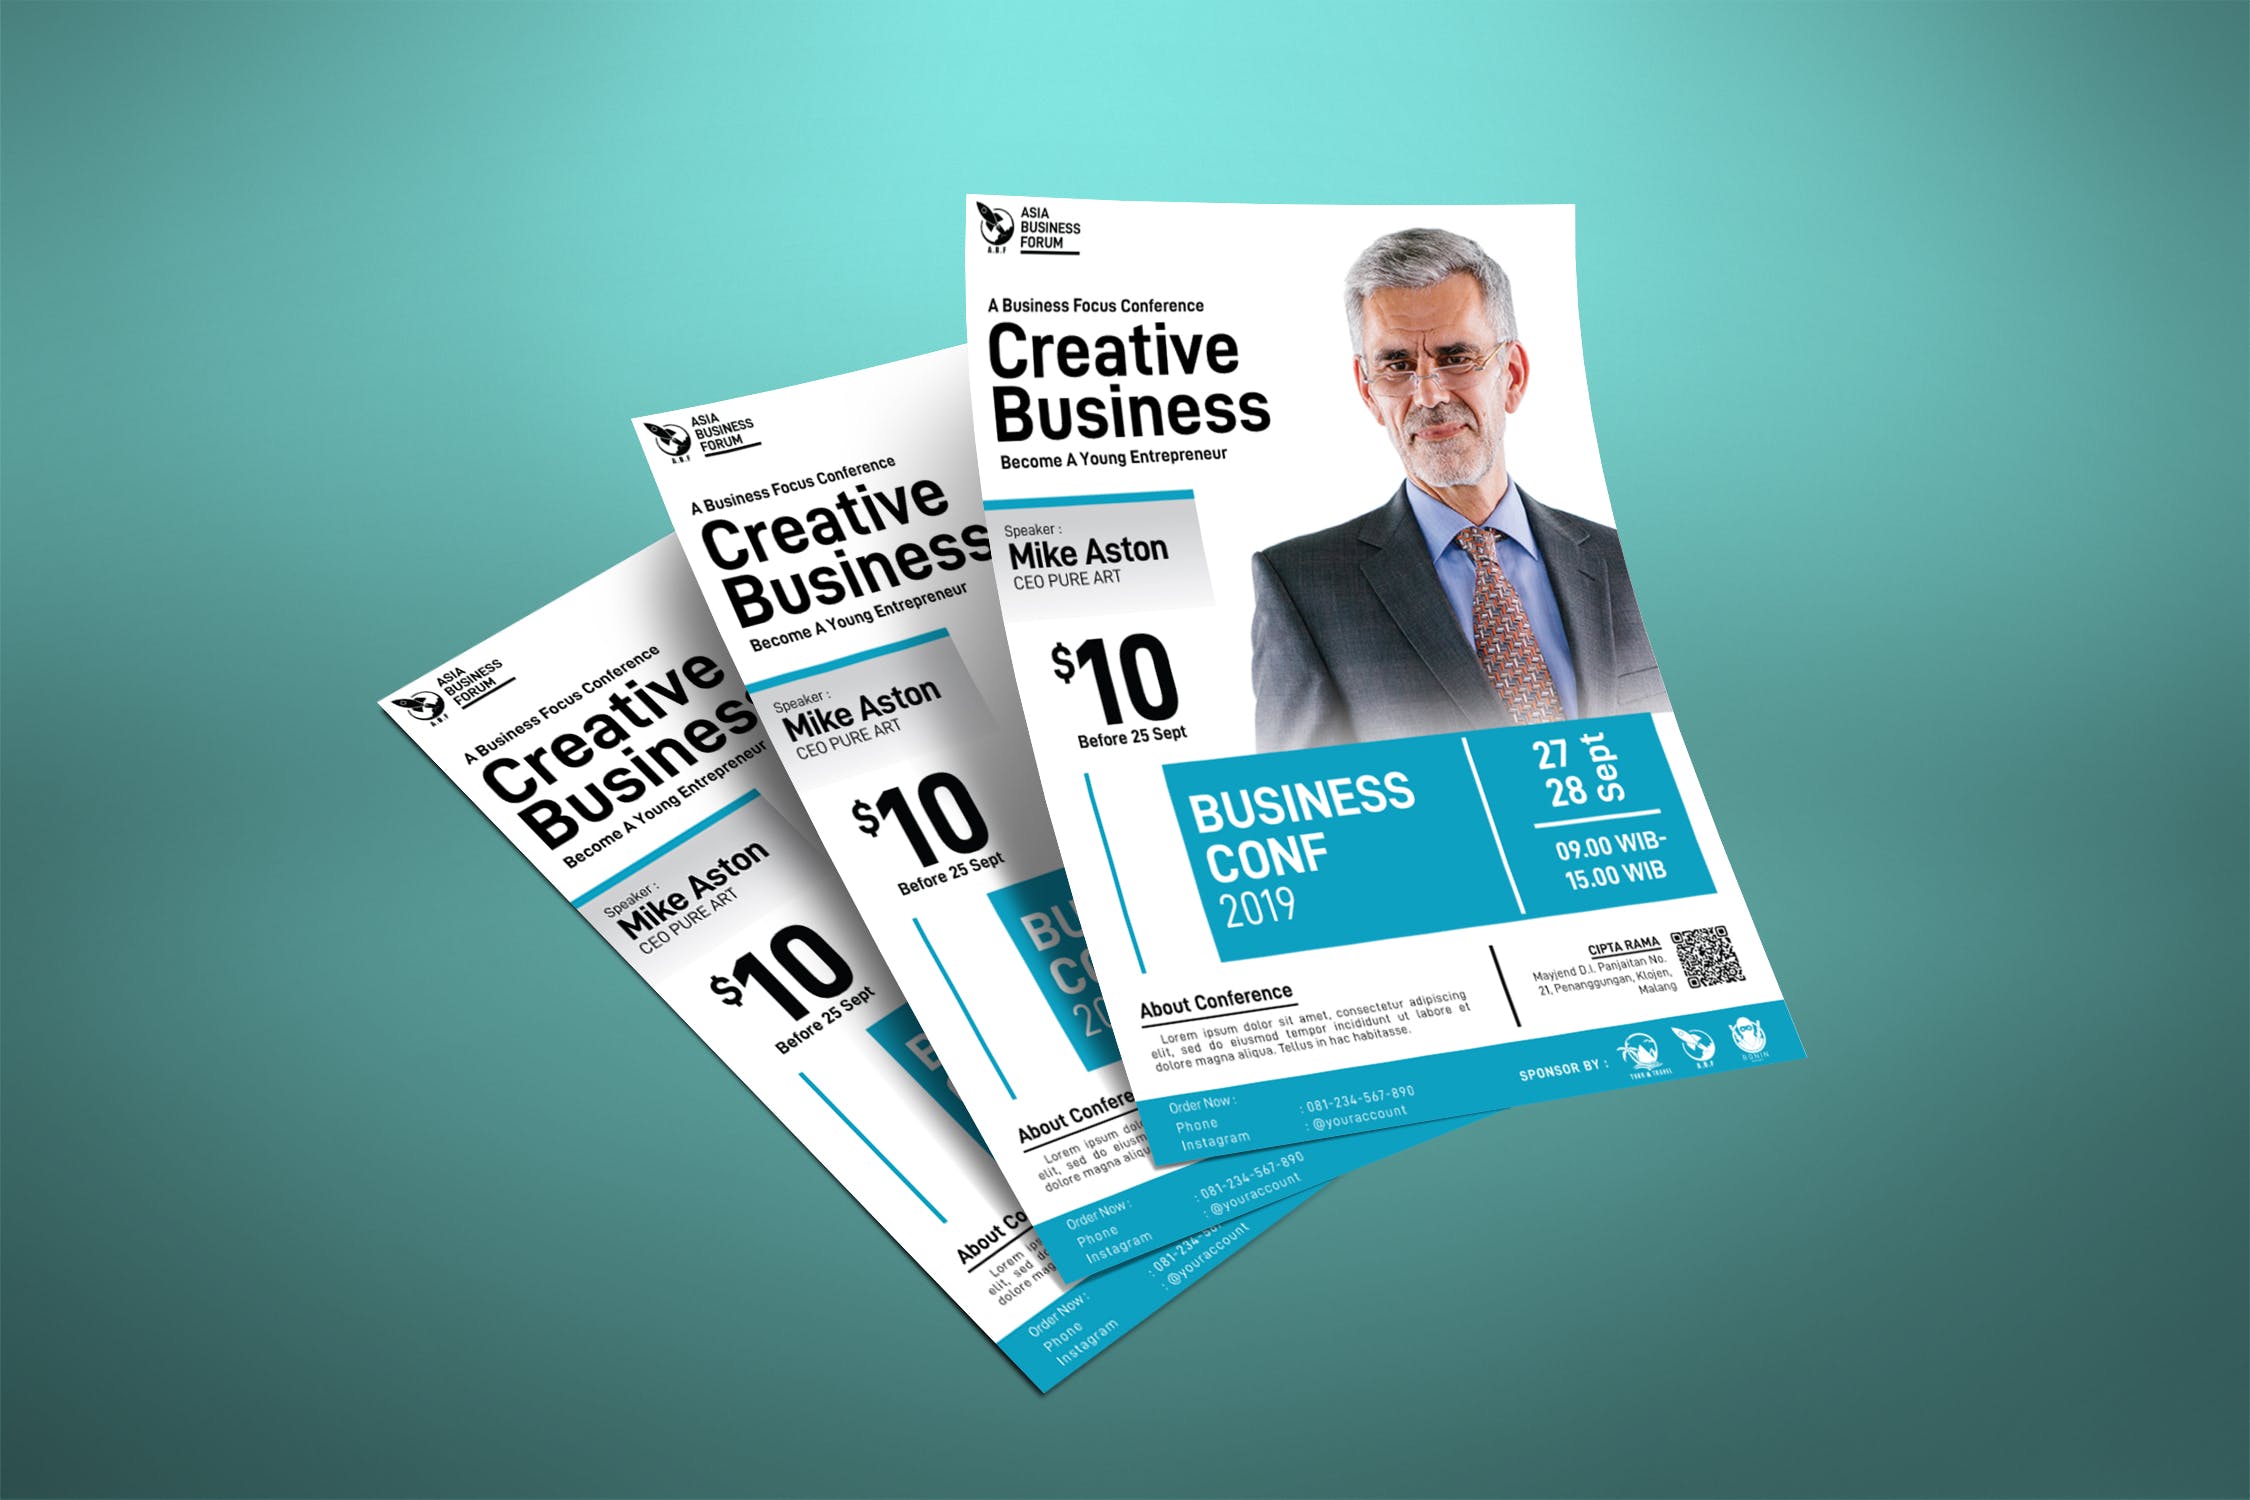 领导力会议/创意商业研讨会海报设计模板 Creative Business Coaching Poster插图(2)